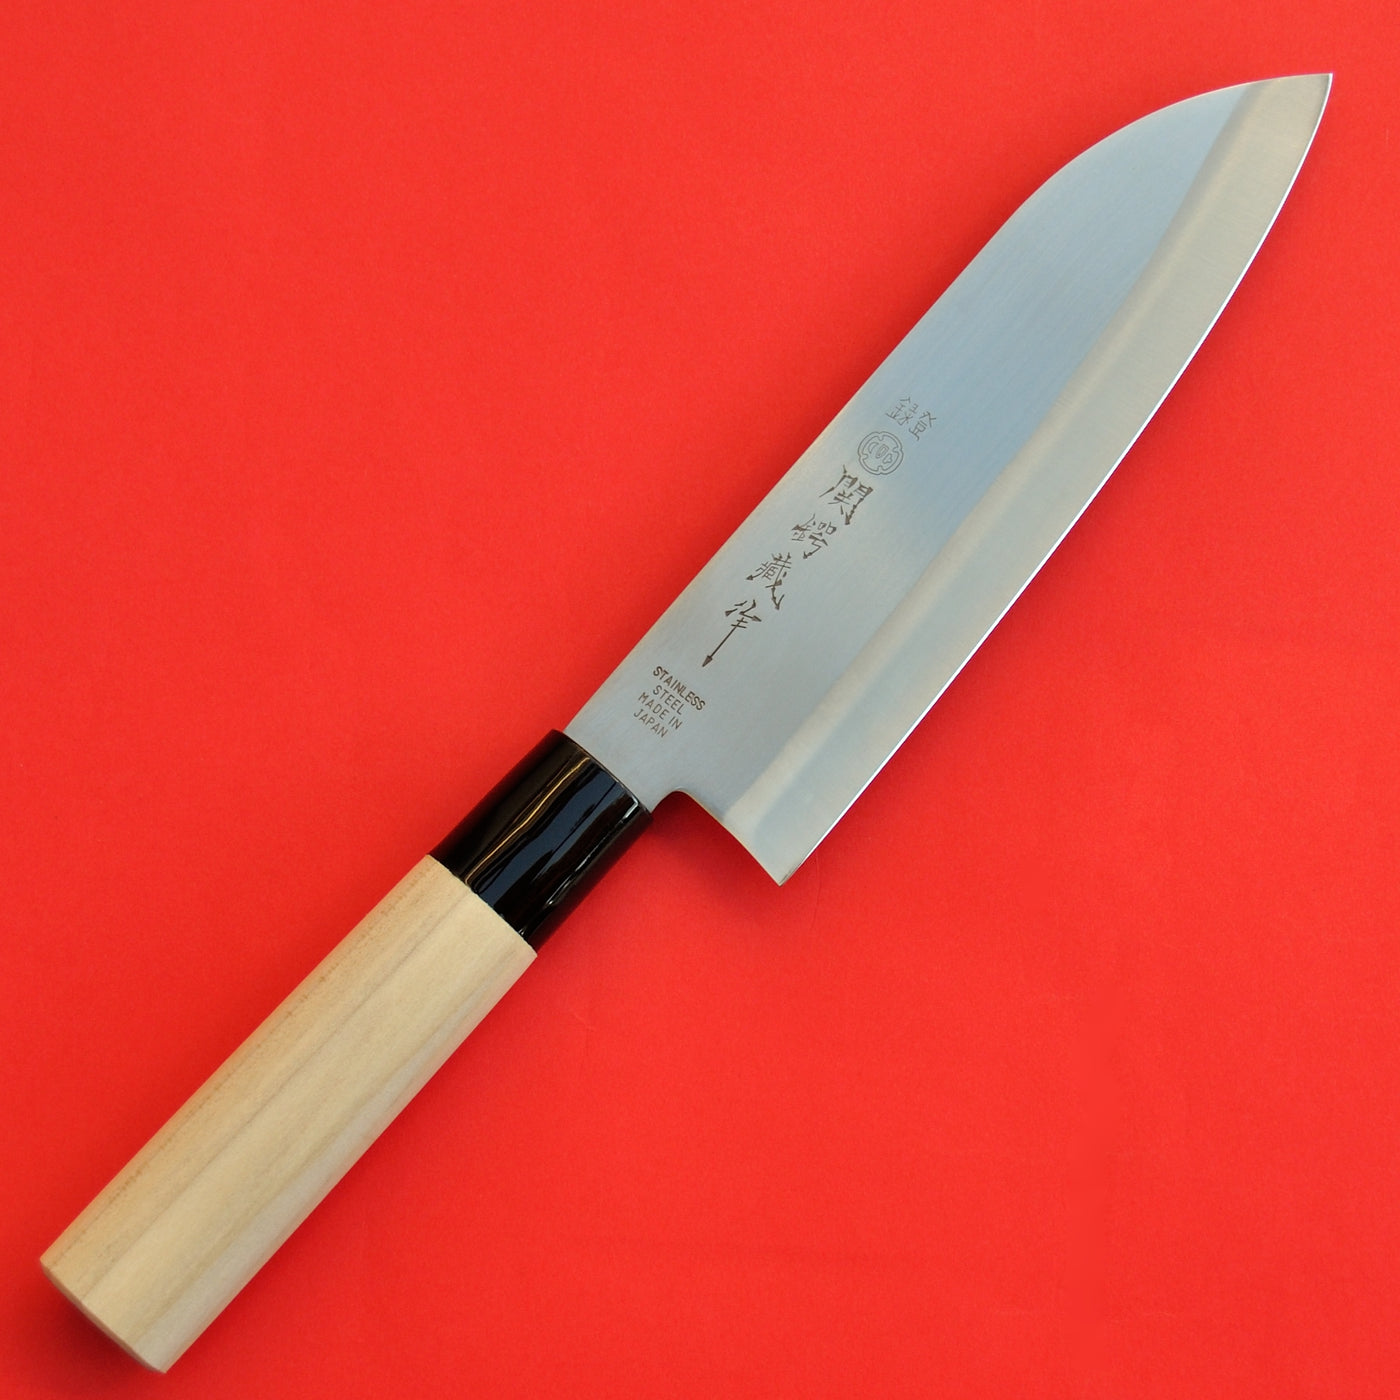 Японский поварской нож. Ножи Santoku Knife. Японский нож сантоку. Шеф нож сантоку. Японский шеф нож сантоку.